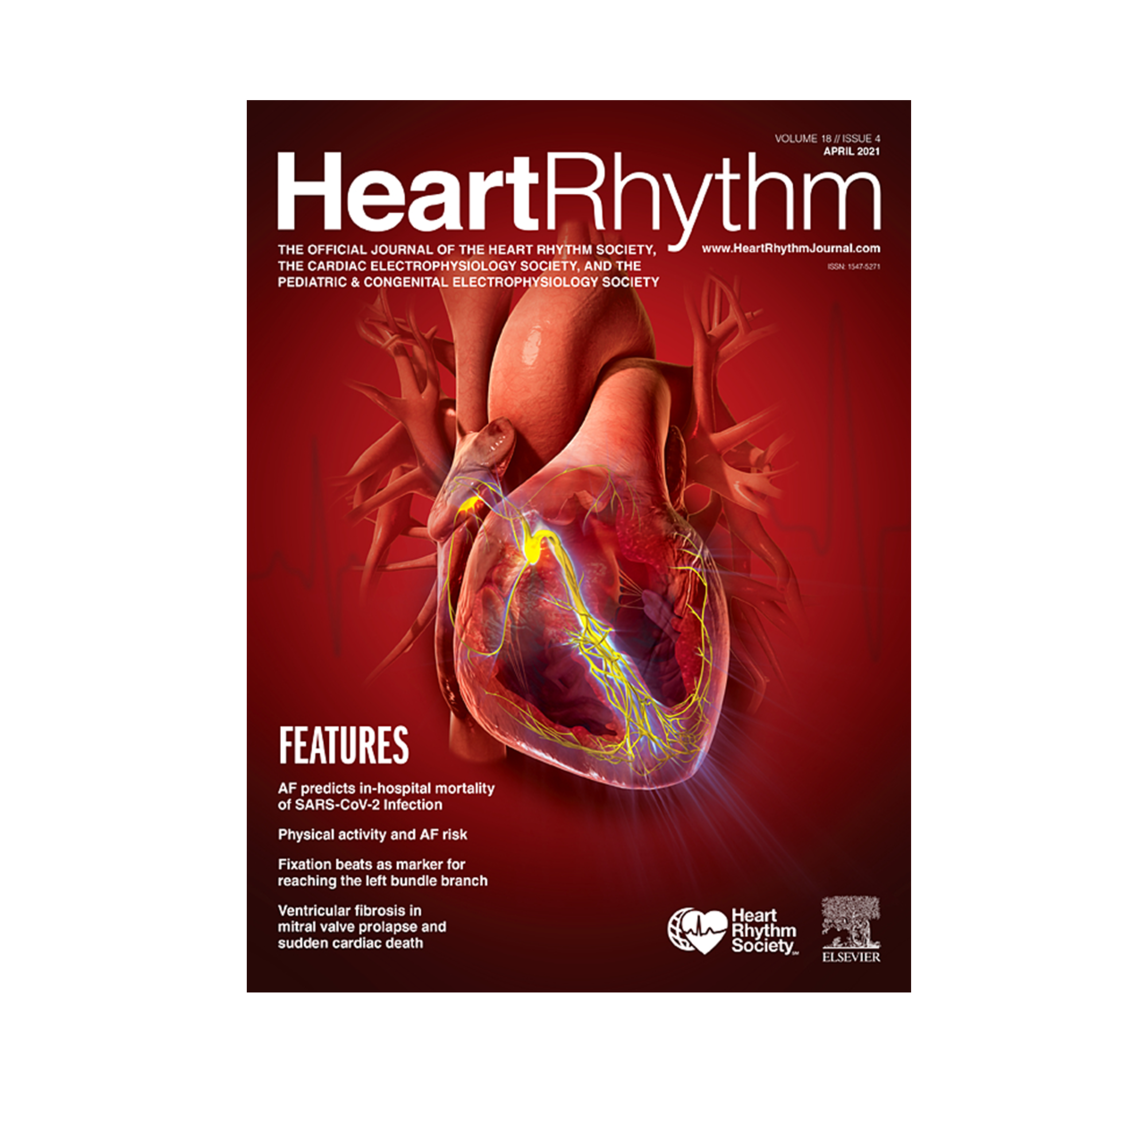 COVID-19 and cardiac arrhythmias